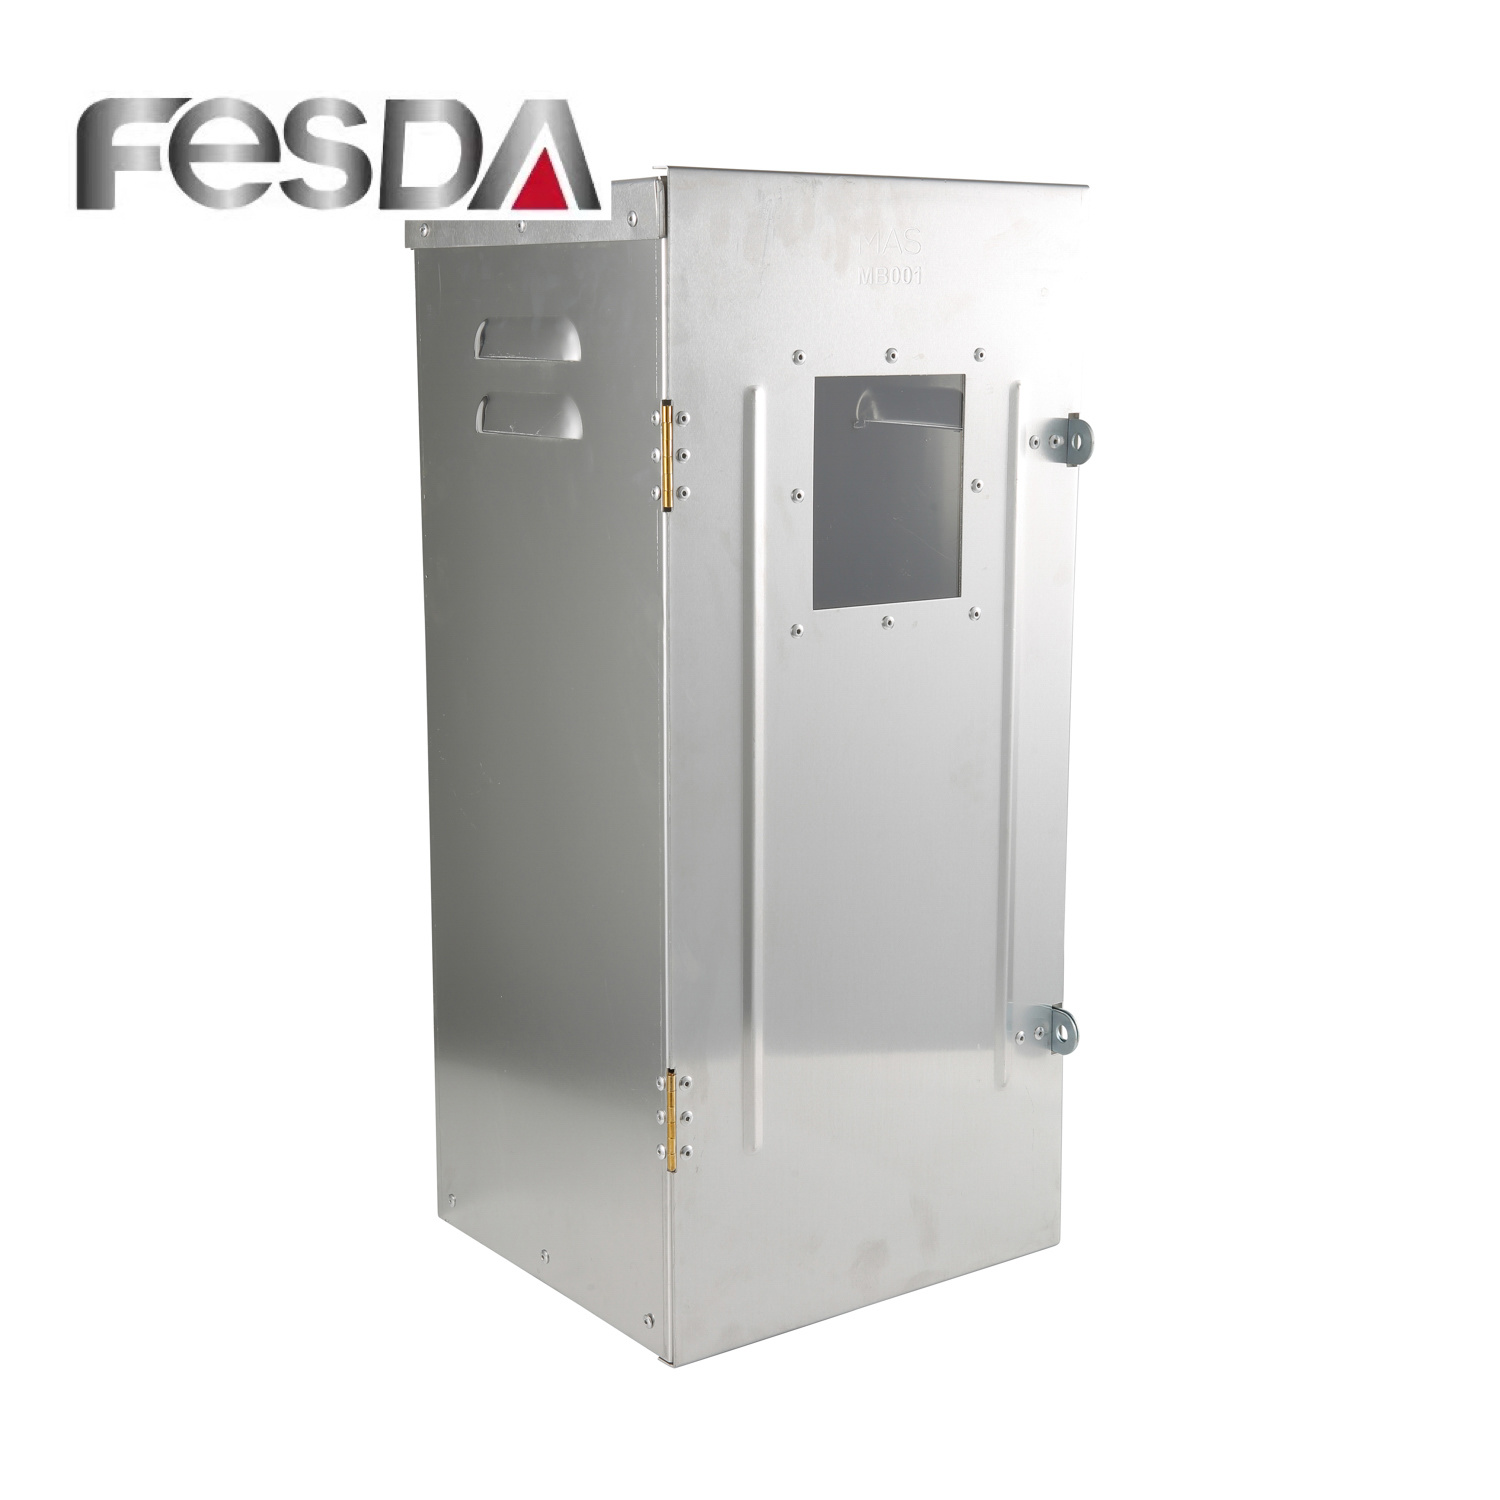 
                                 Boîtier d'alimentation électronique en aluminium avec contrôle de sécurité Fesda                            